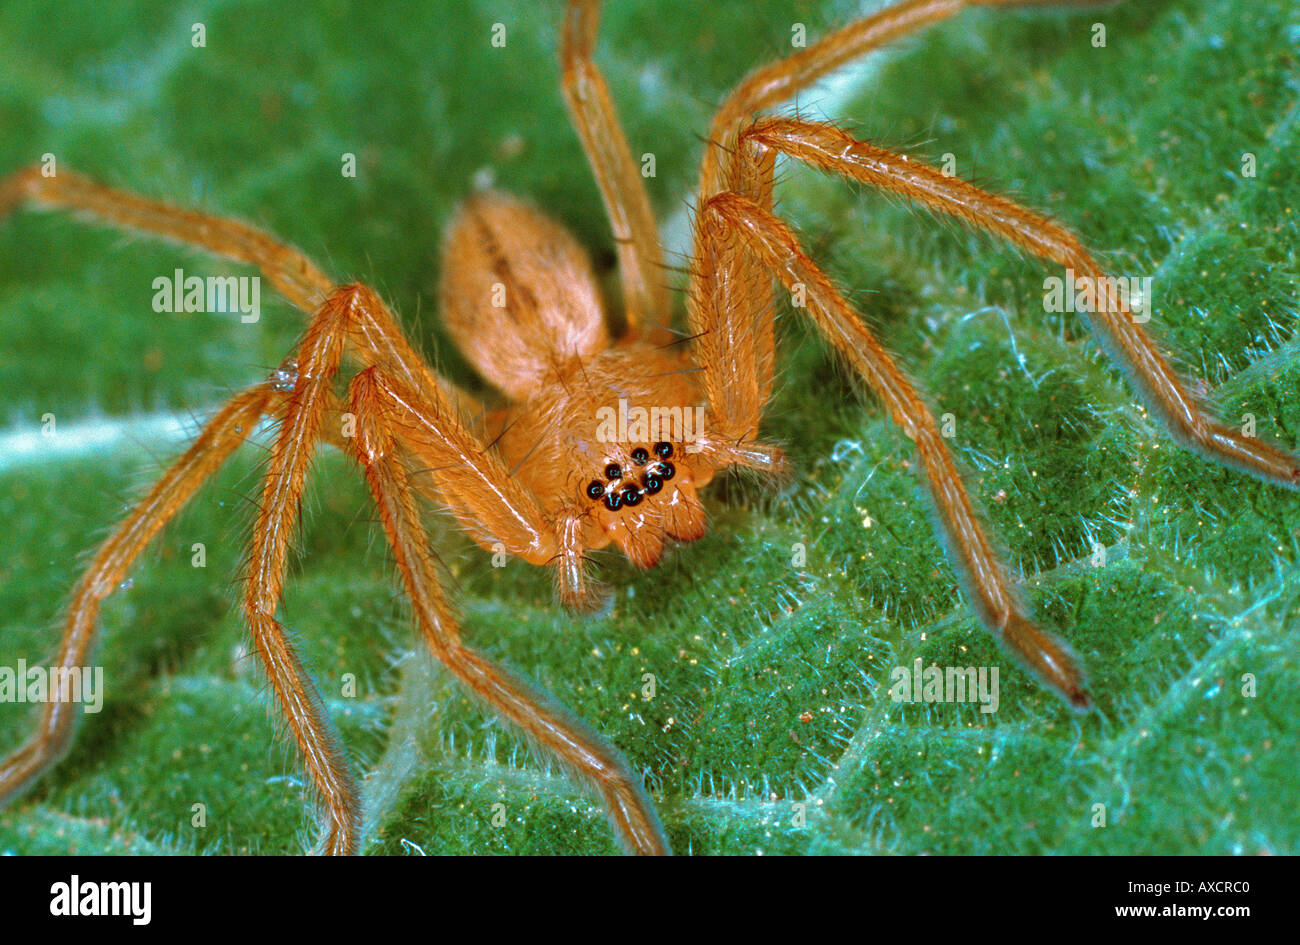 Junge Spinne Marokko Stockfotografie - Alamy